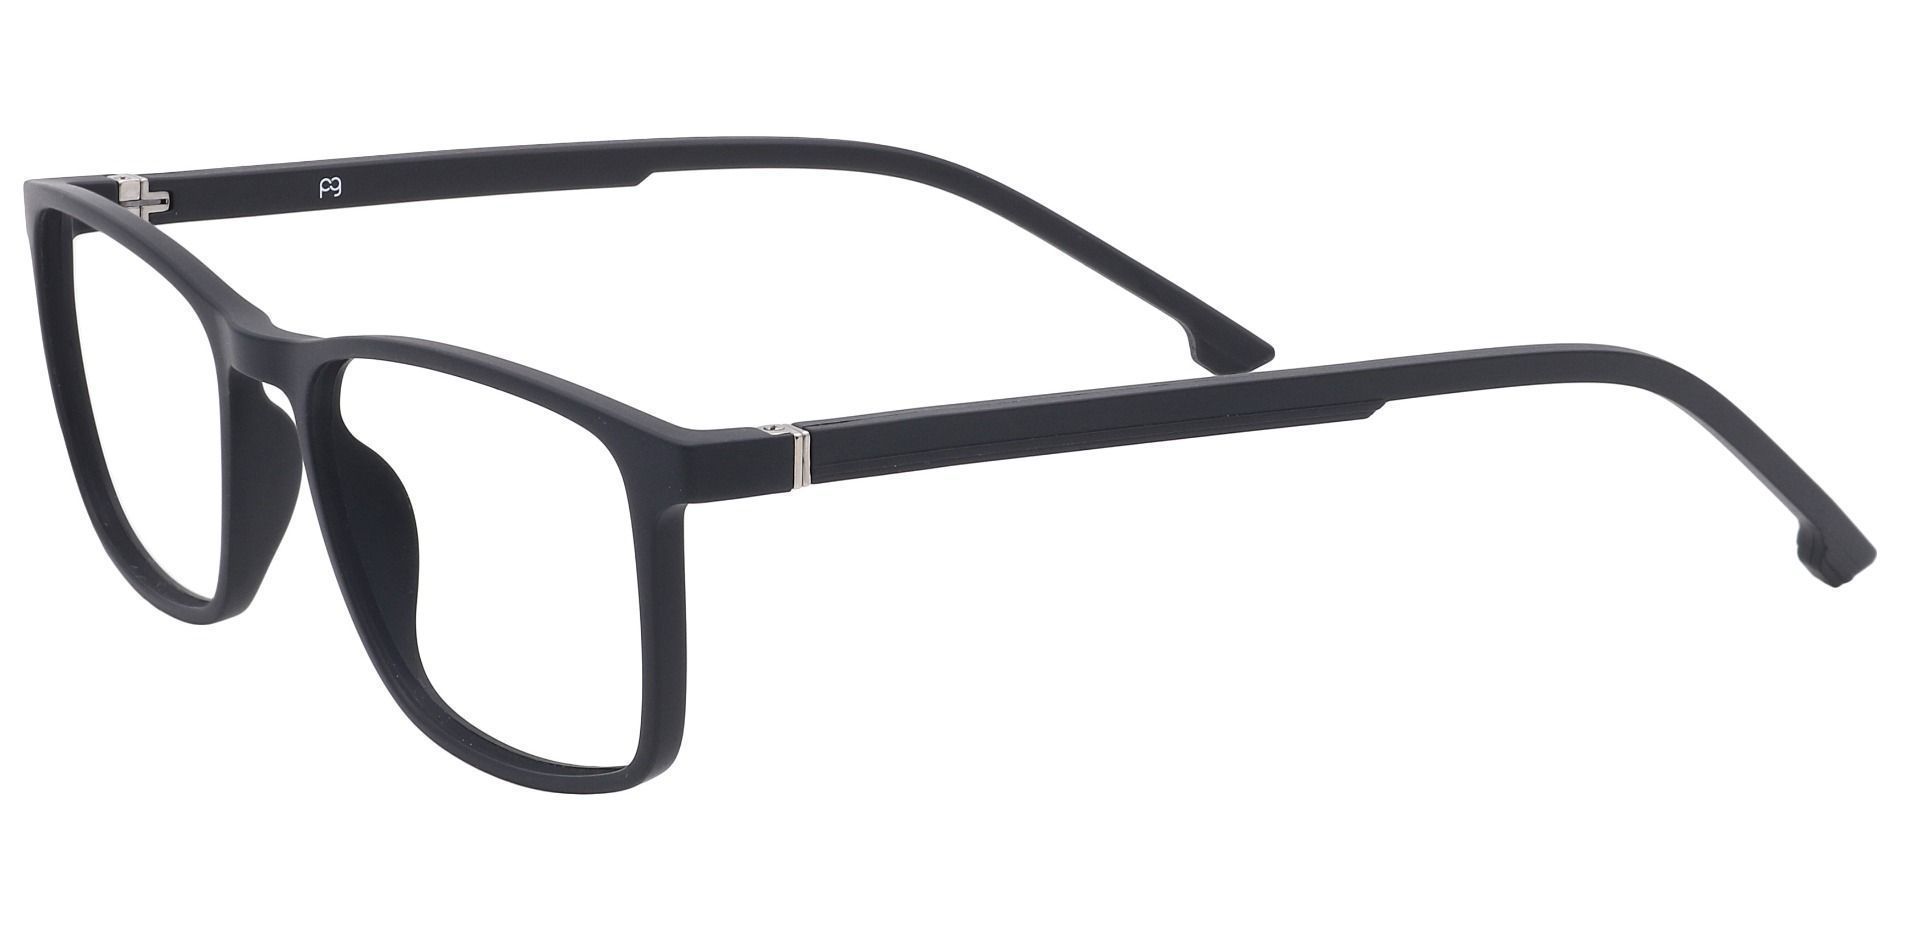 Franklin Rectangle Lined Bifocal Glasses -   Matte Black  